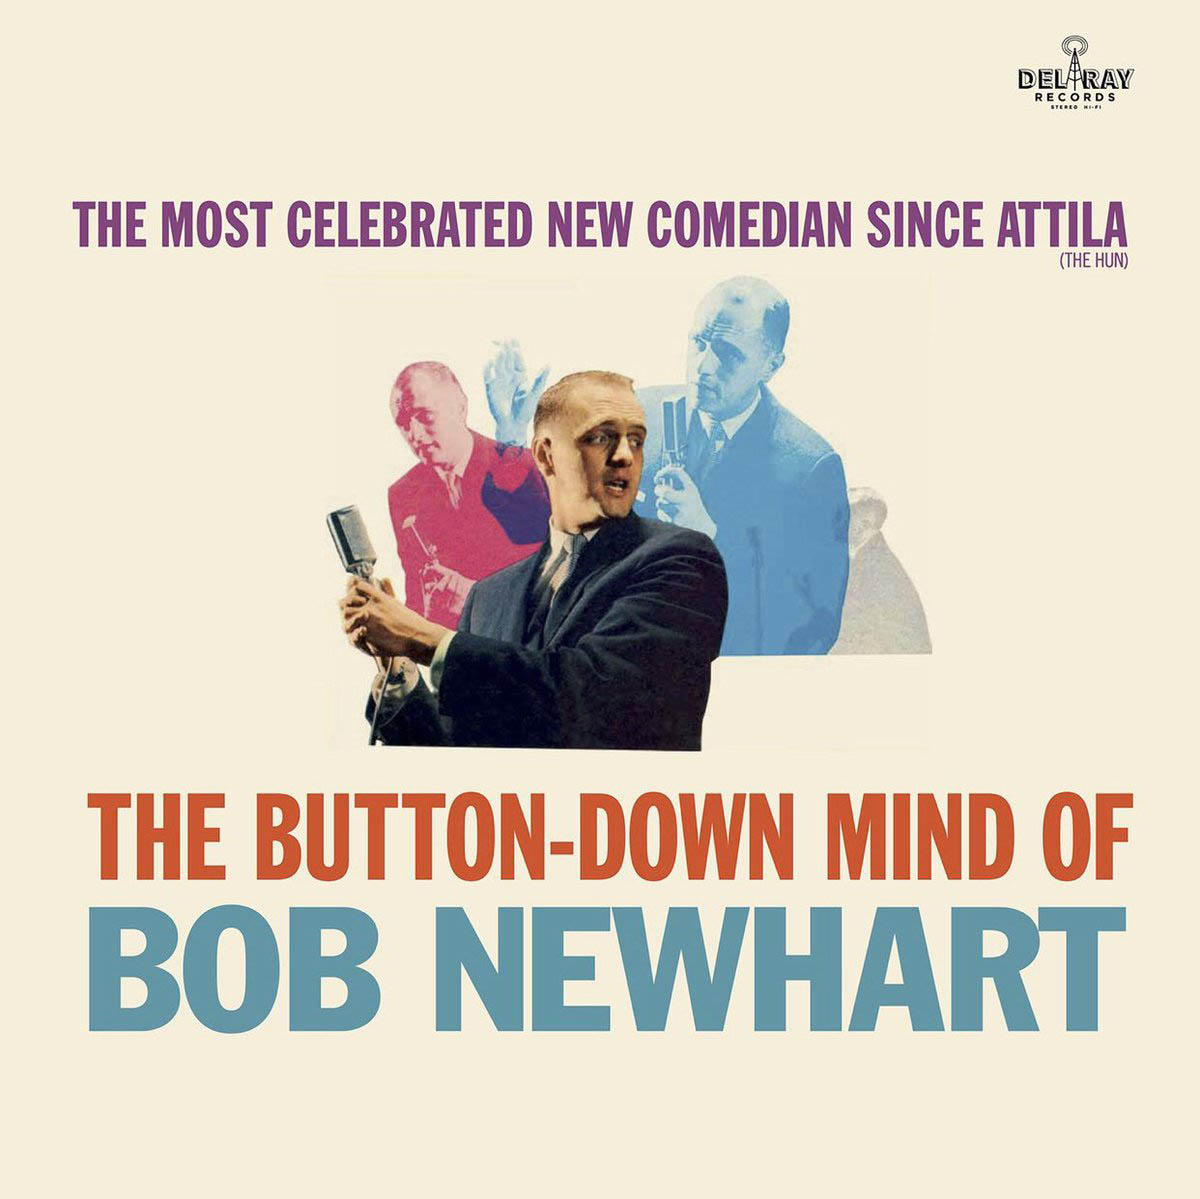 Couverture de l'album "The Button Down Mind Of Bob Newhart" (1960)